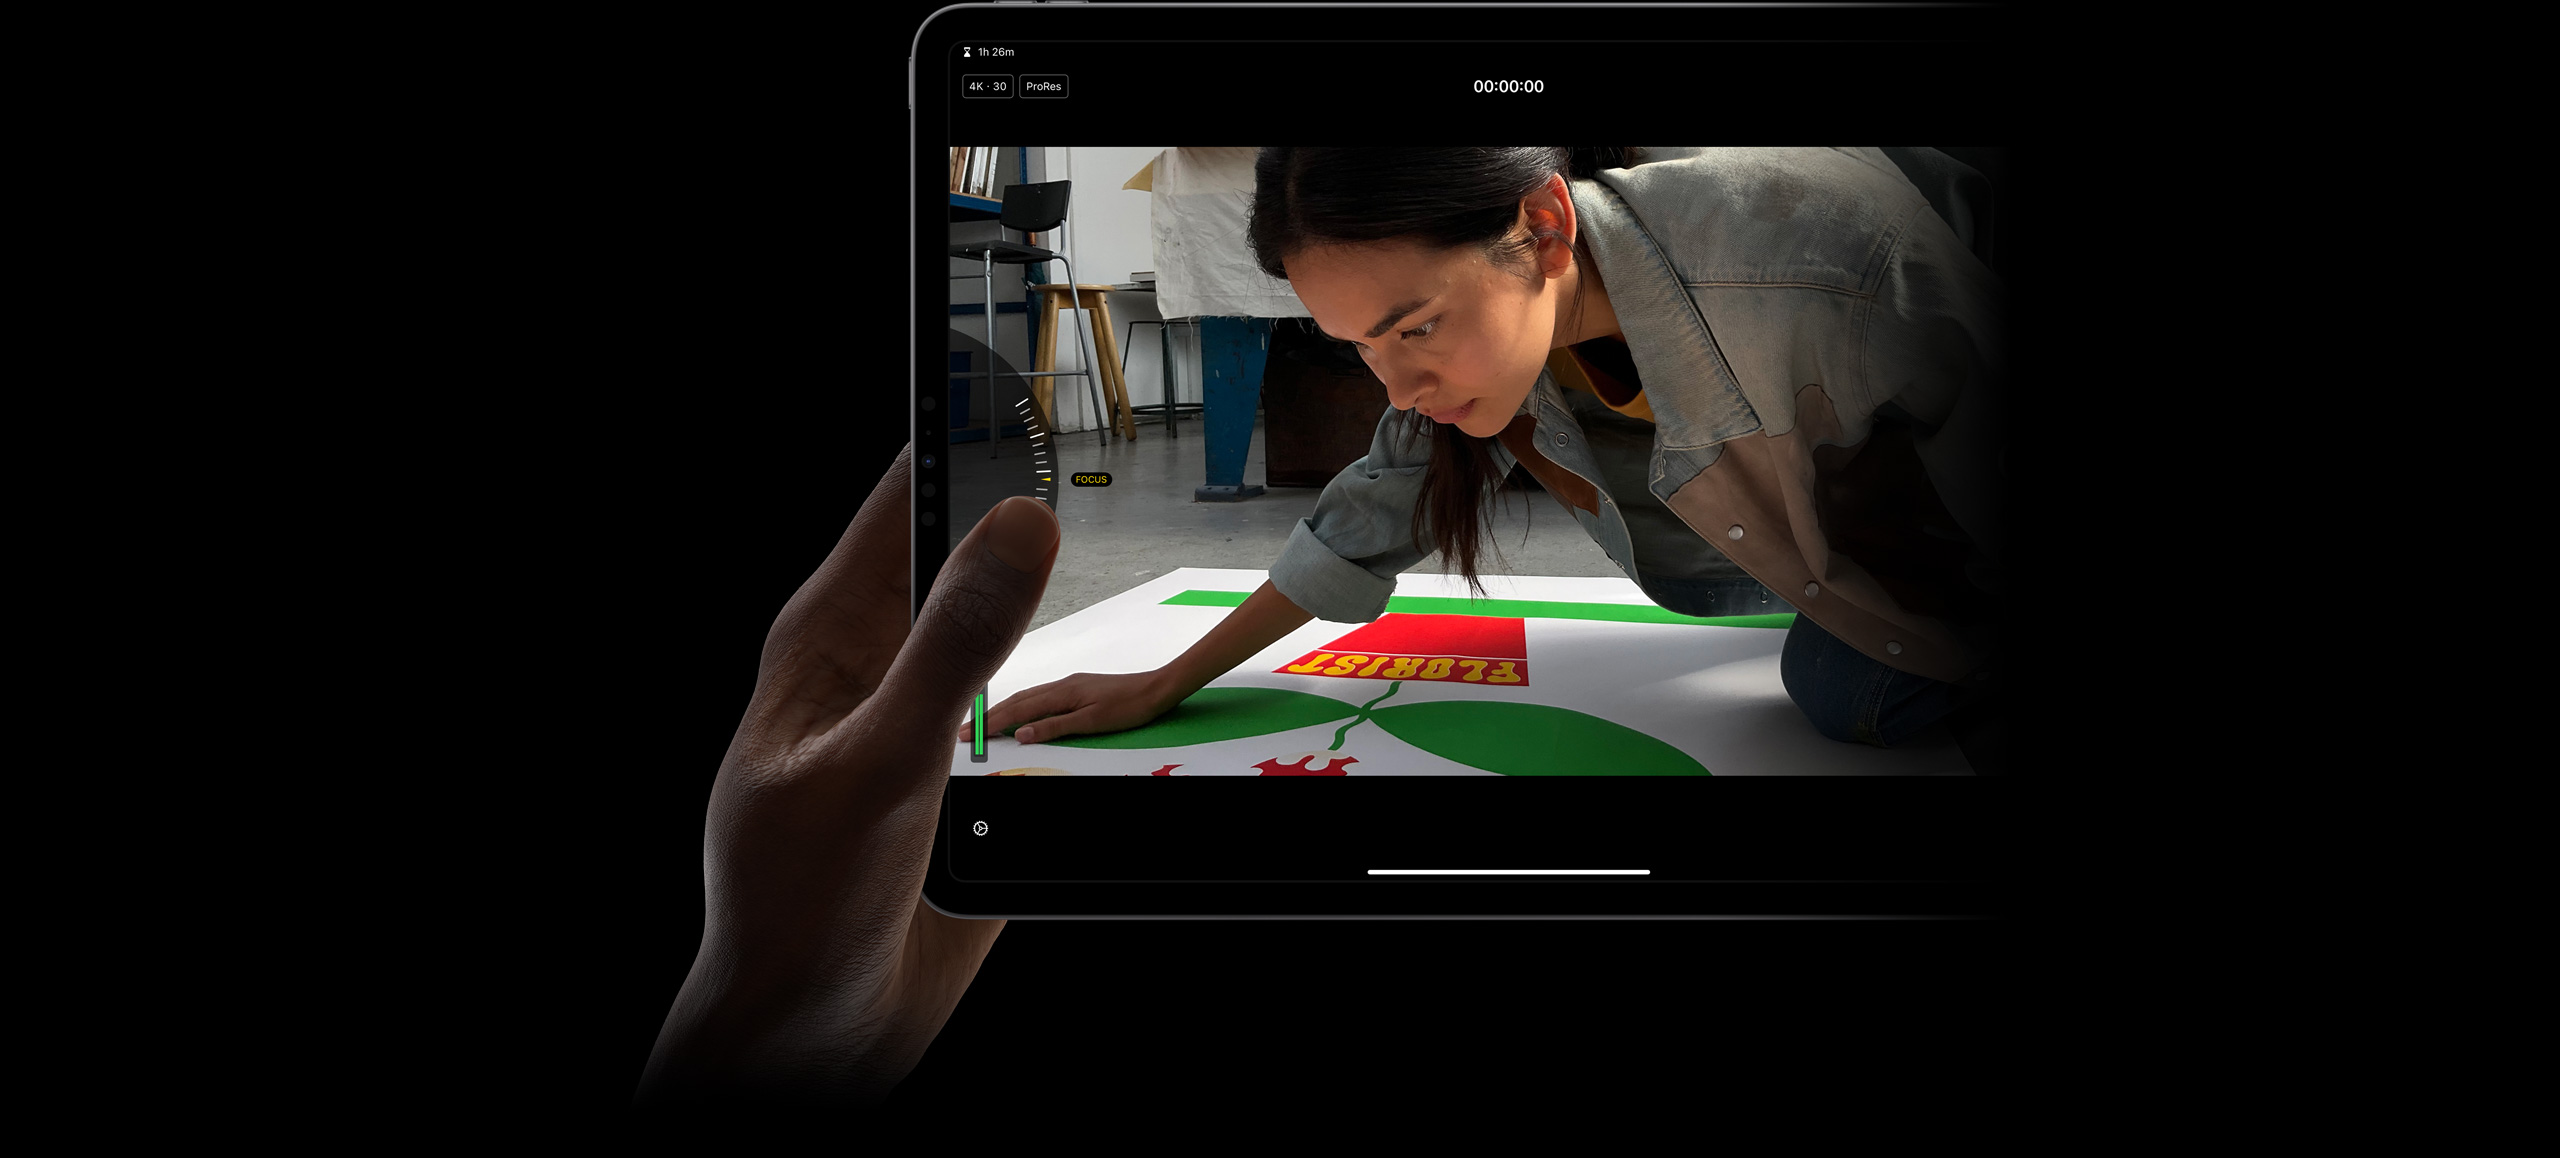 Dedo polegar ajusta o foco da gravação em ProRes usando os controles do modo de câmera Pro manual no Final Cut Pro para iPad no iPad Pro.